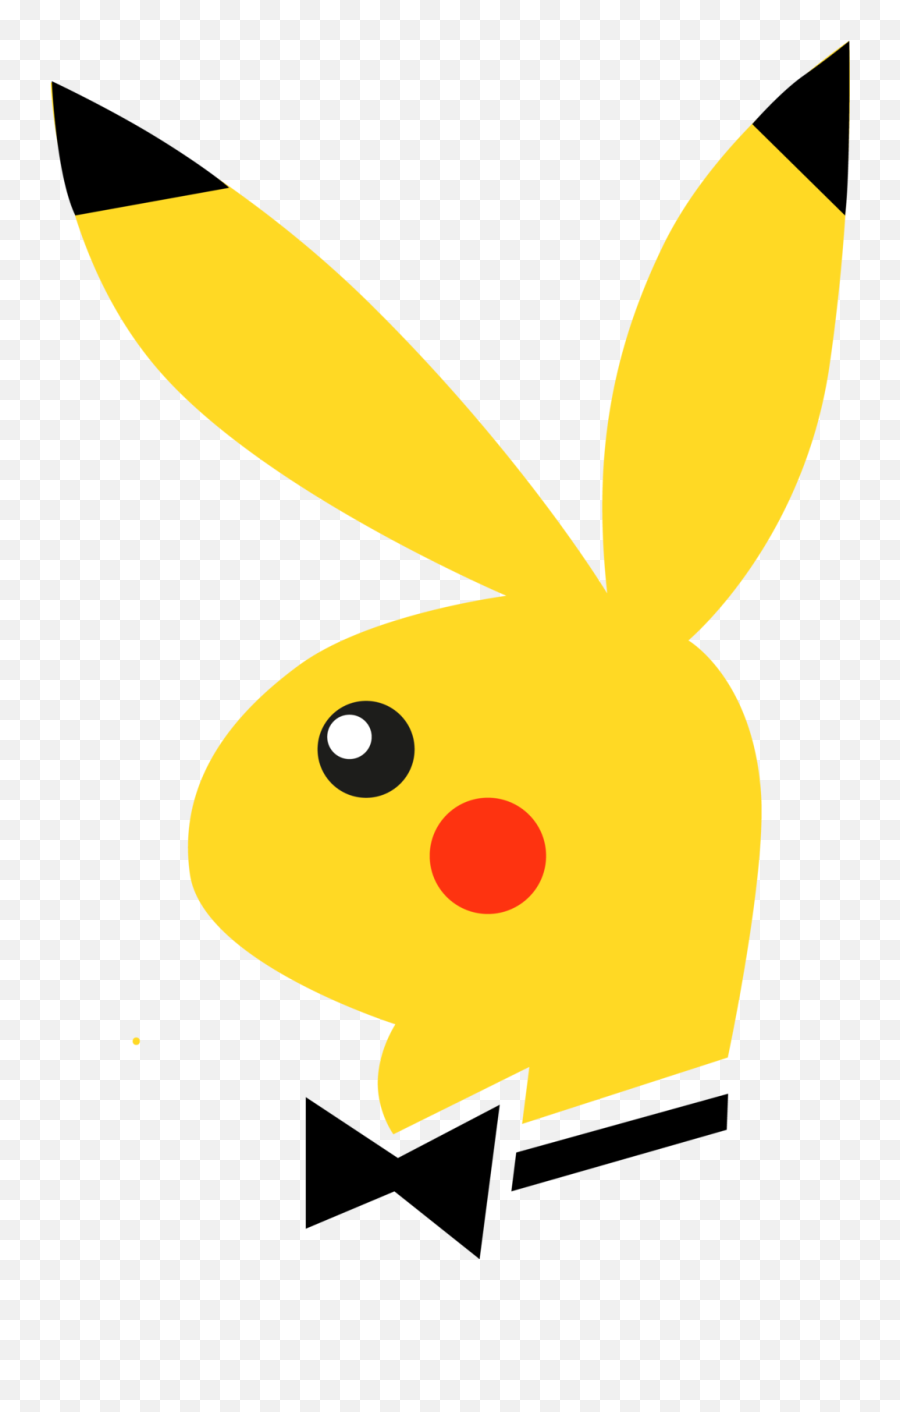 Pikachu the movie logo